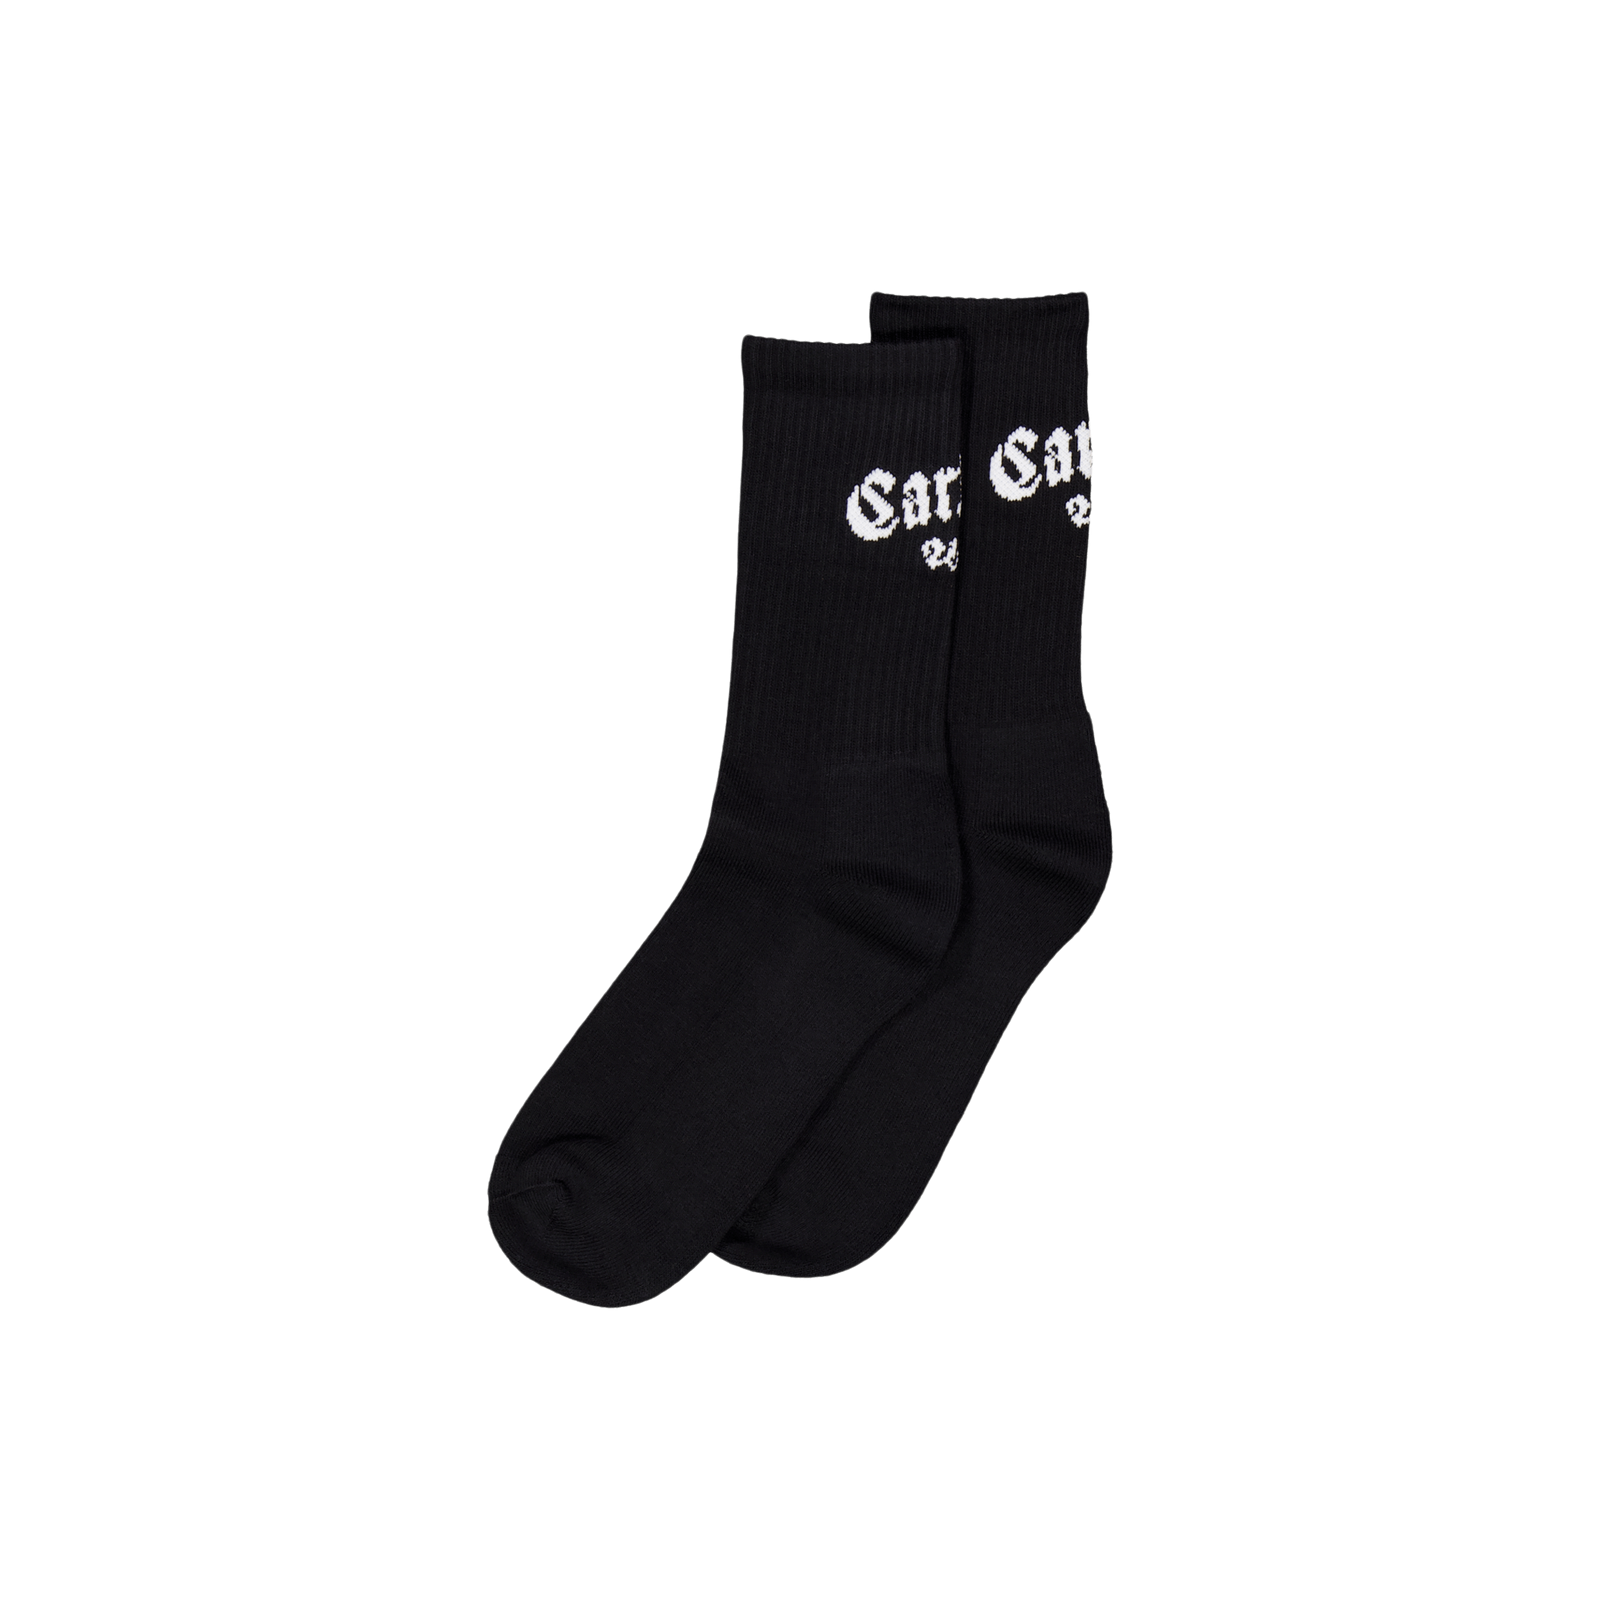 Onyx Socks Black / White